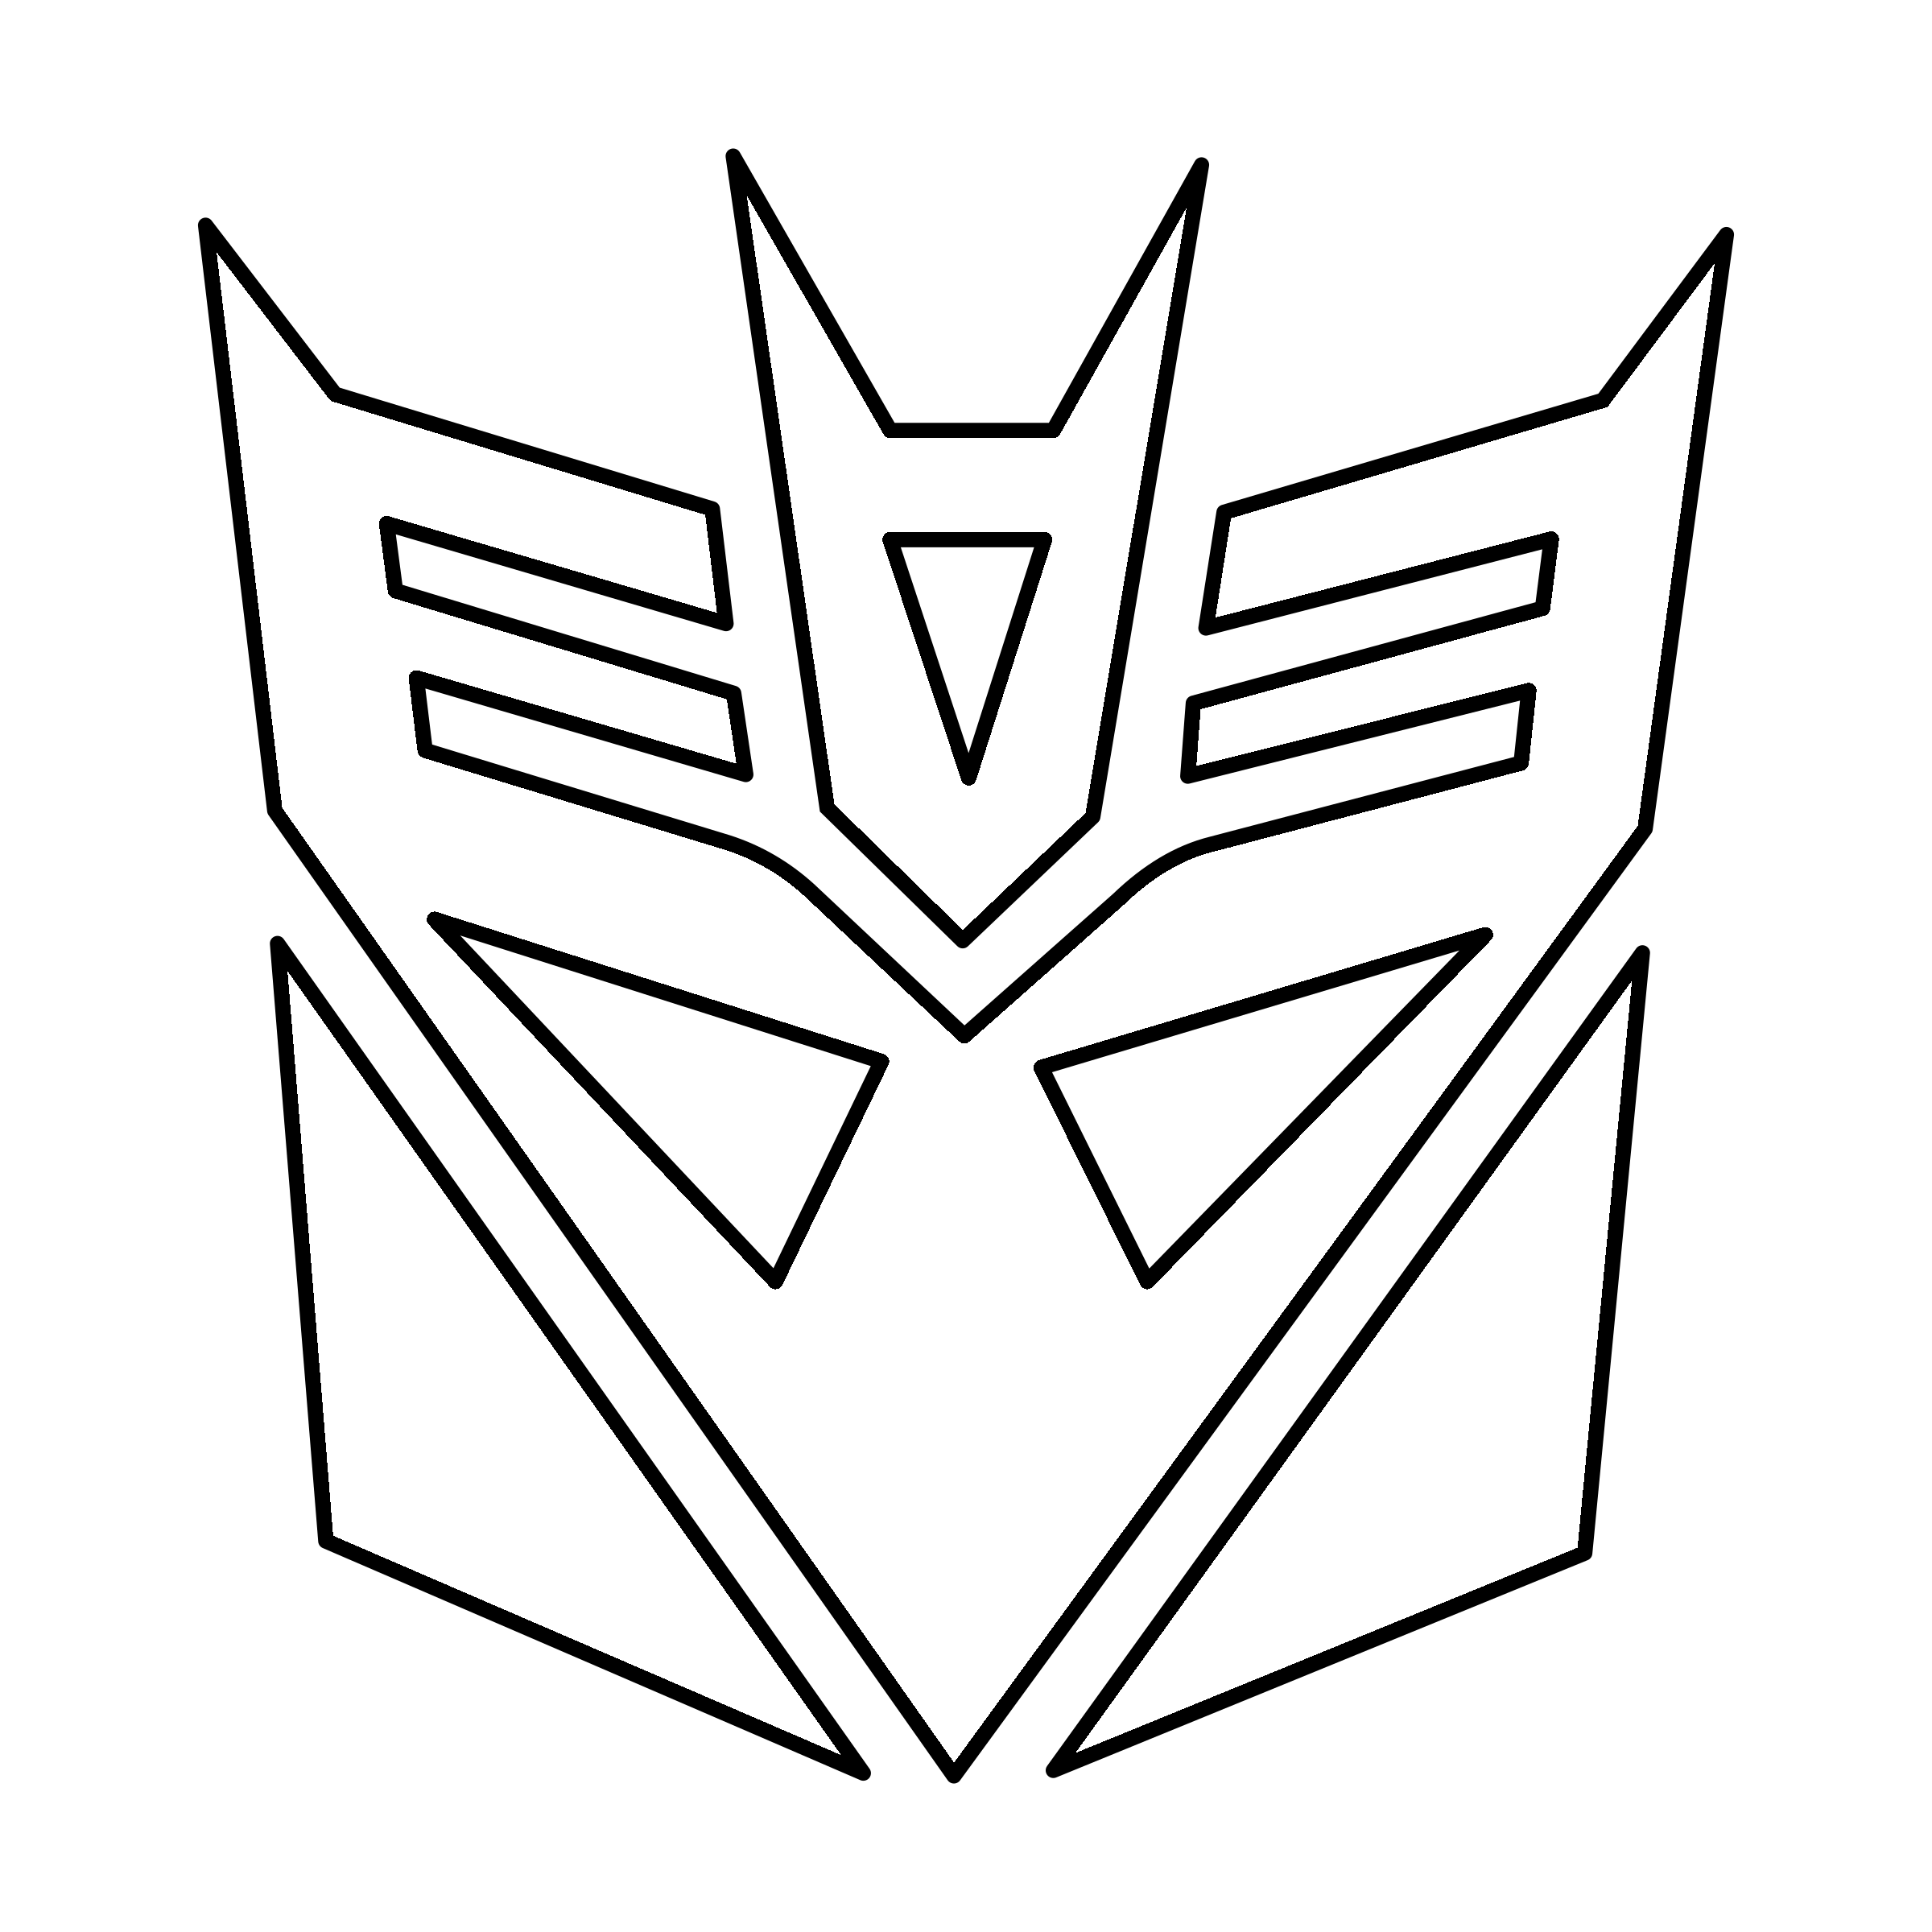 Decpticon Logo - Transformers Decepticon Logo PNG Transparent & SVG Vector - Freebie ...